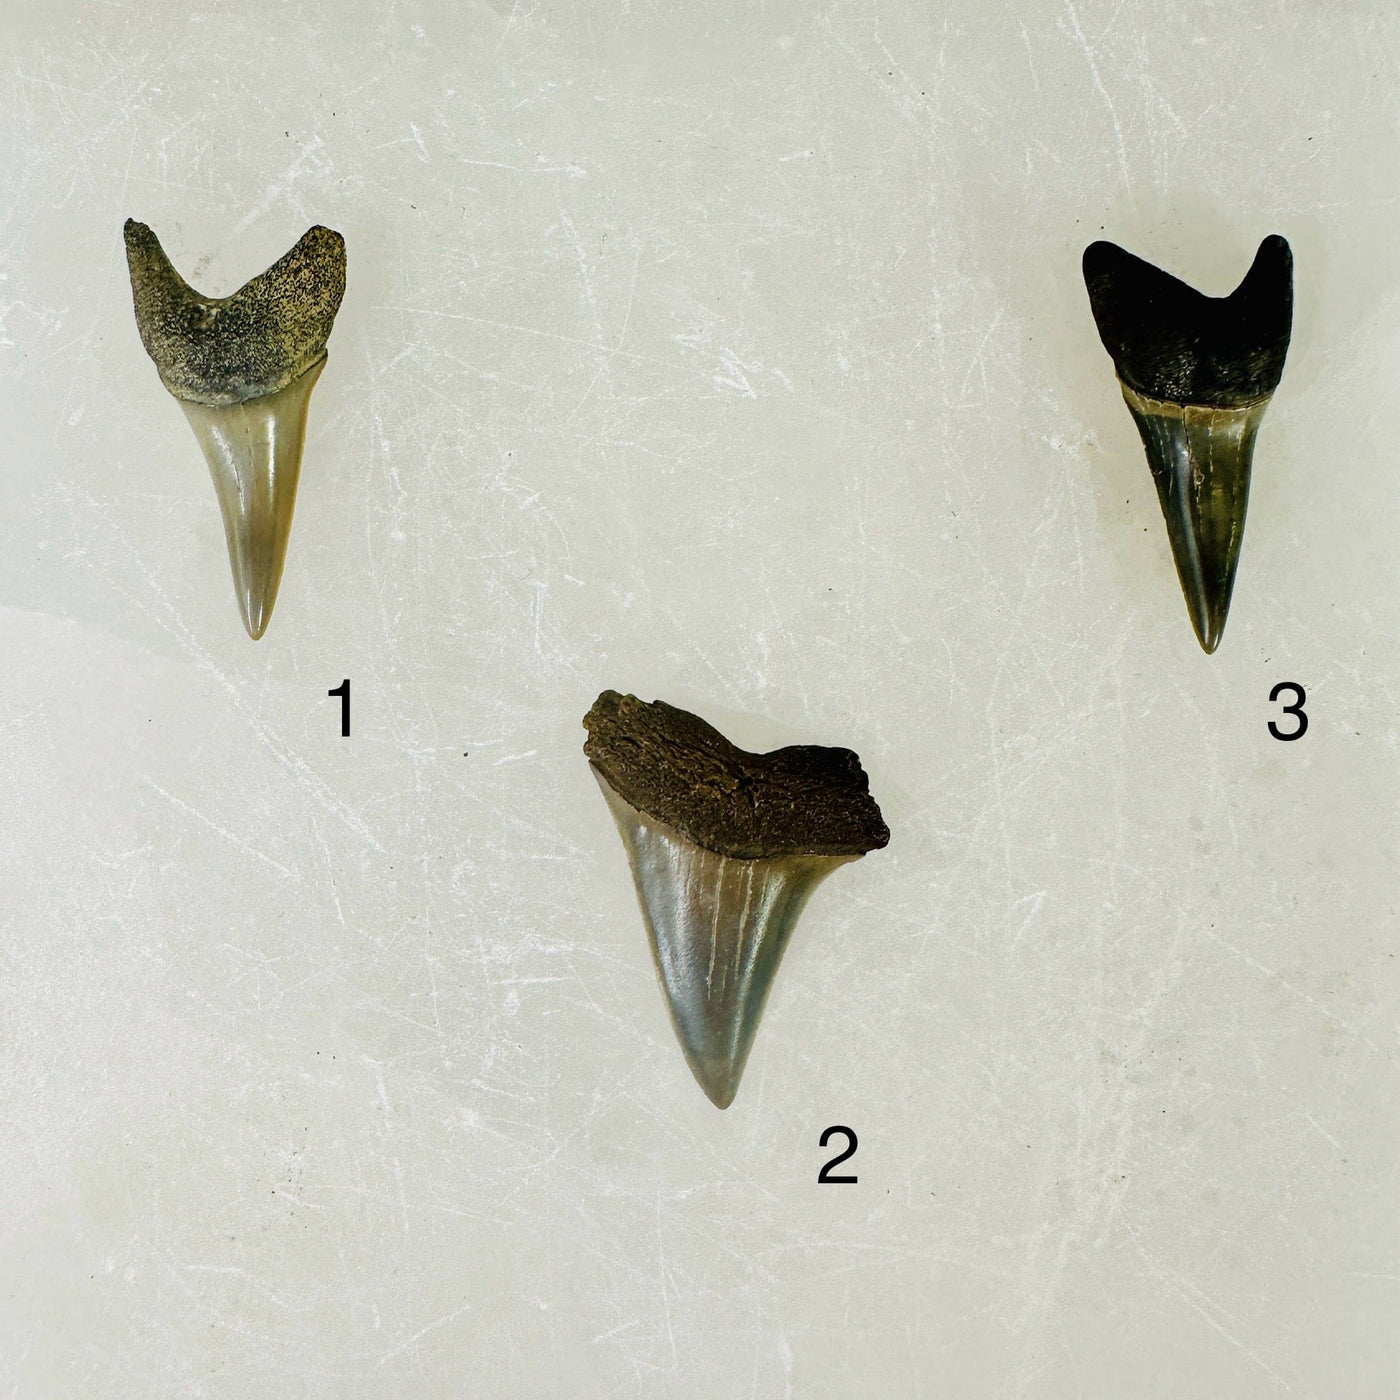 Mako Teeth - Polished Shark Teeth Fossils - You Choose variants 1 2 3 labeled